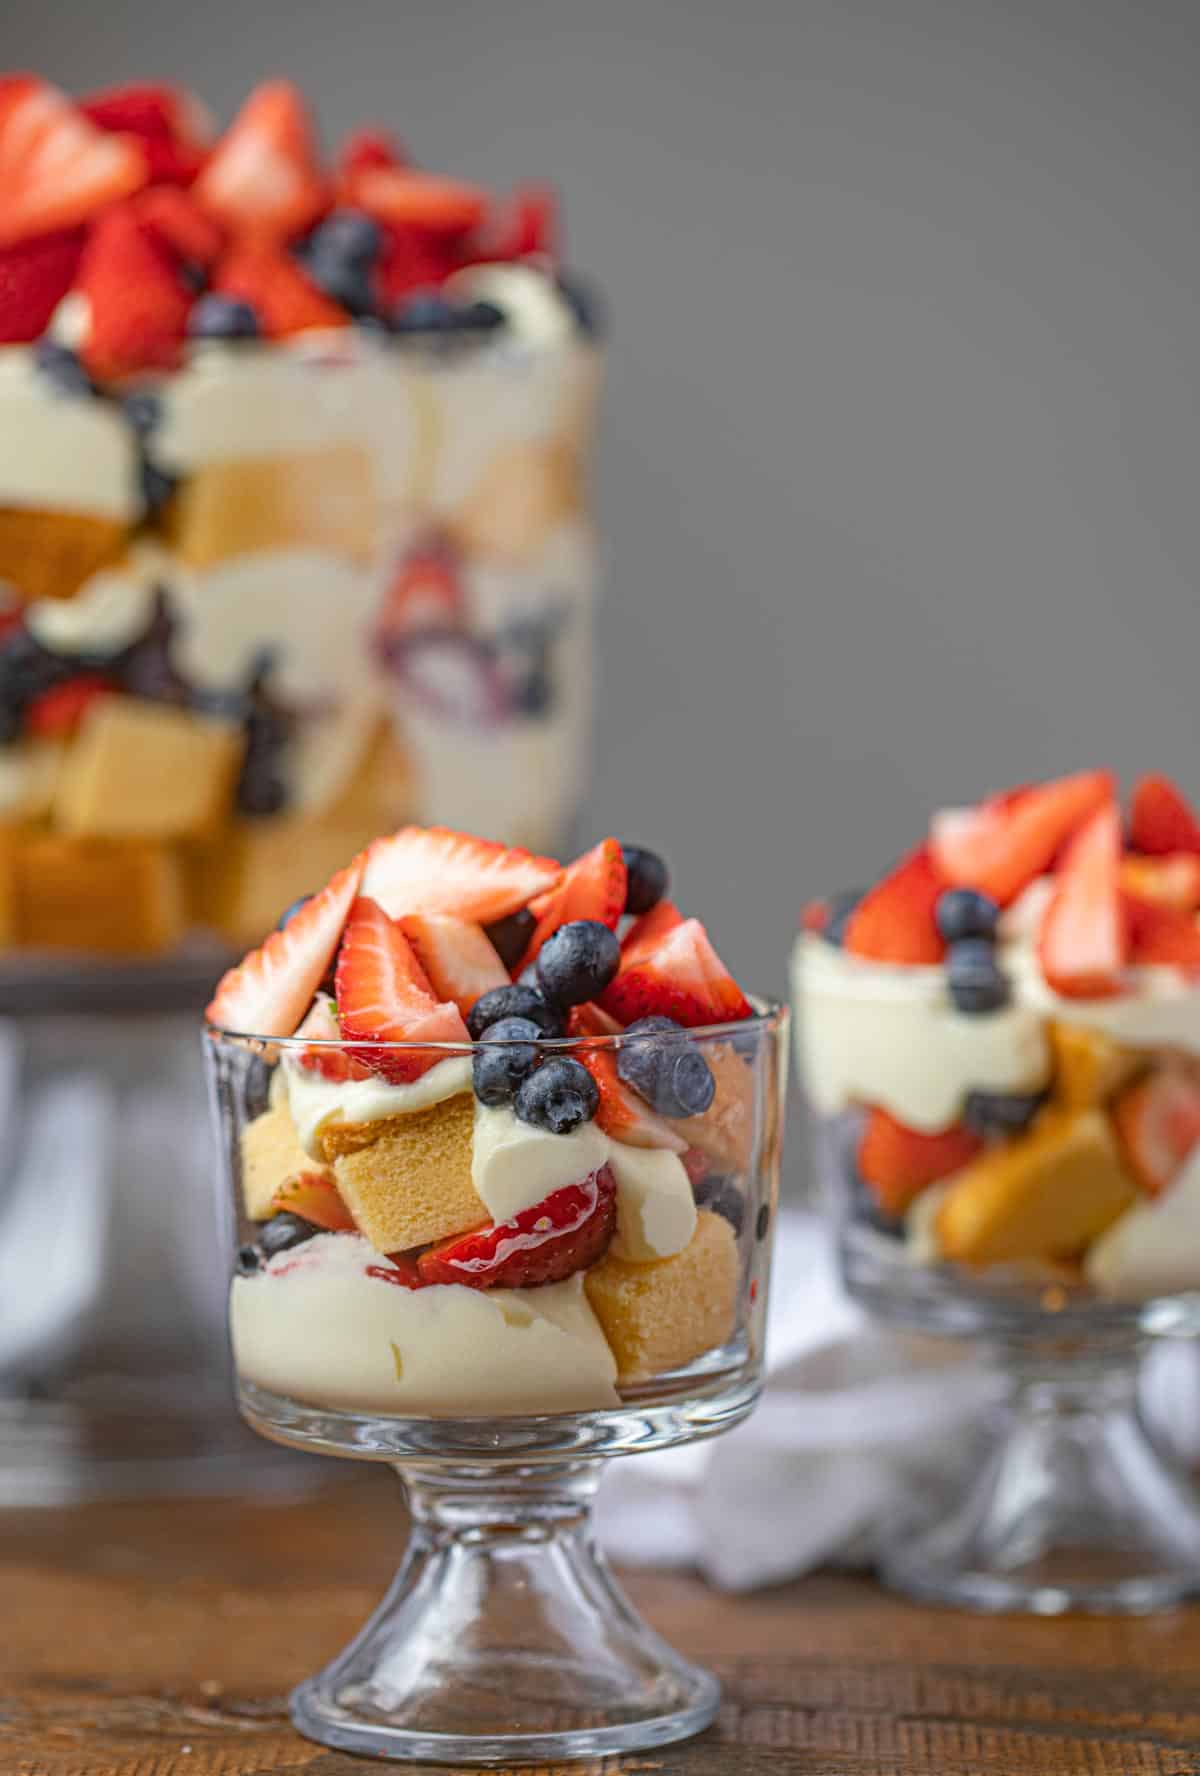 Mixed Berry Trifle (Better than Rachel Green's!) - Dinner, then Dessert